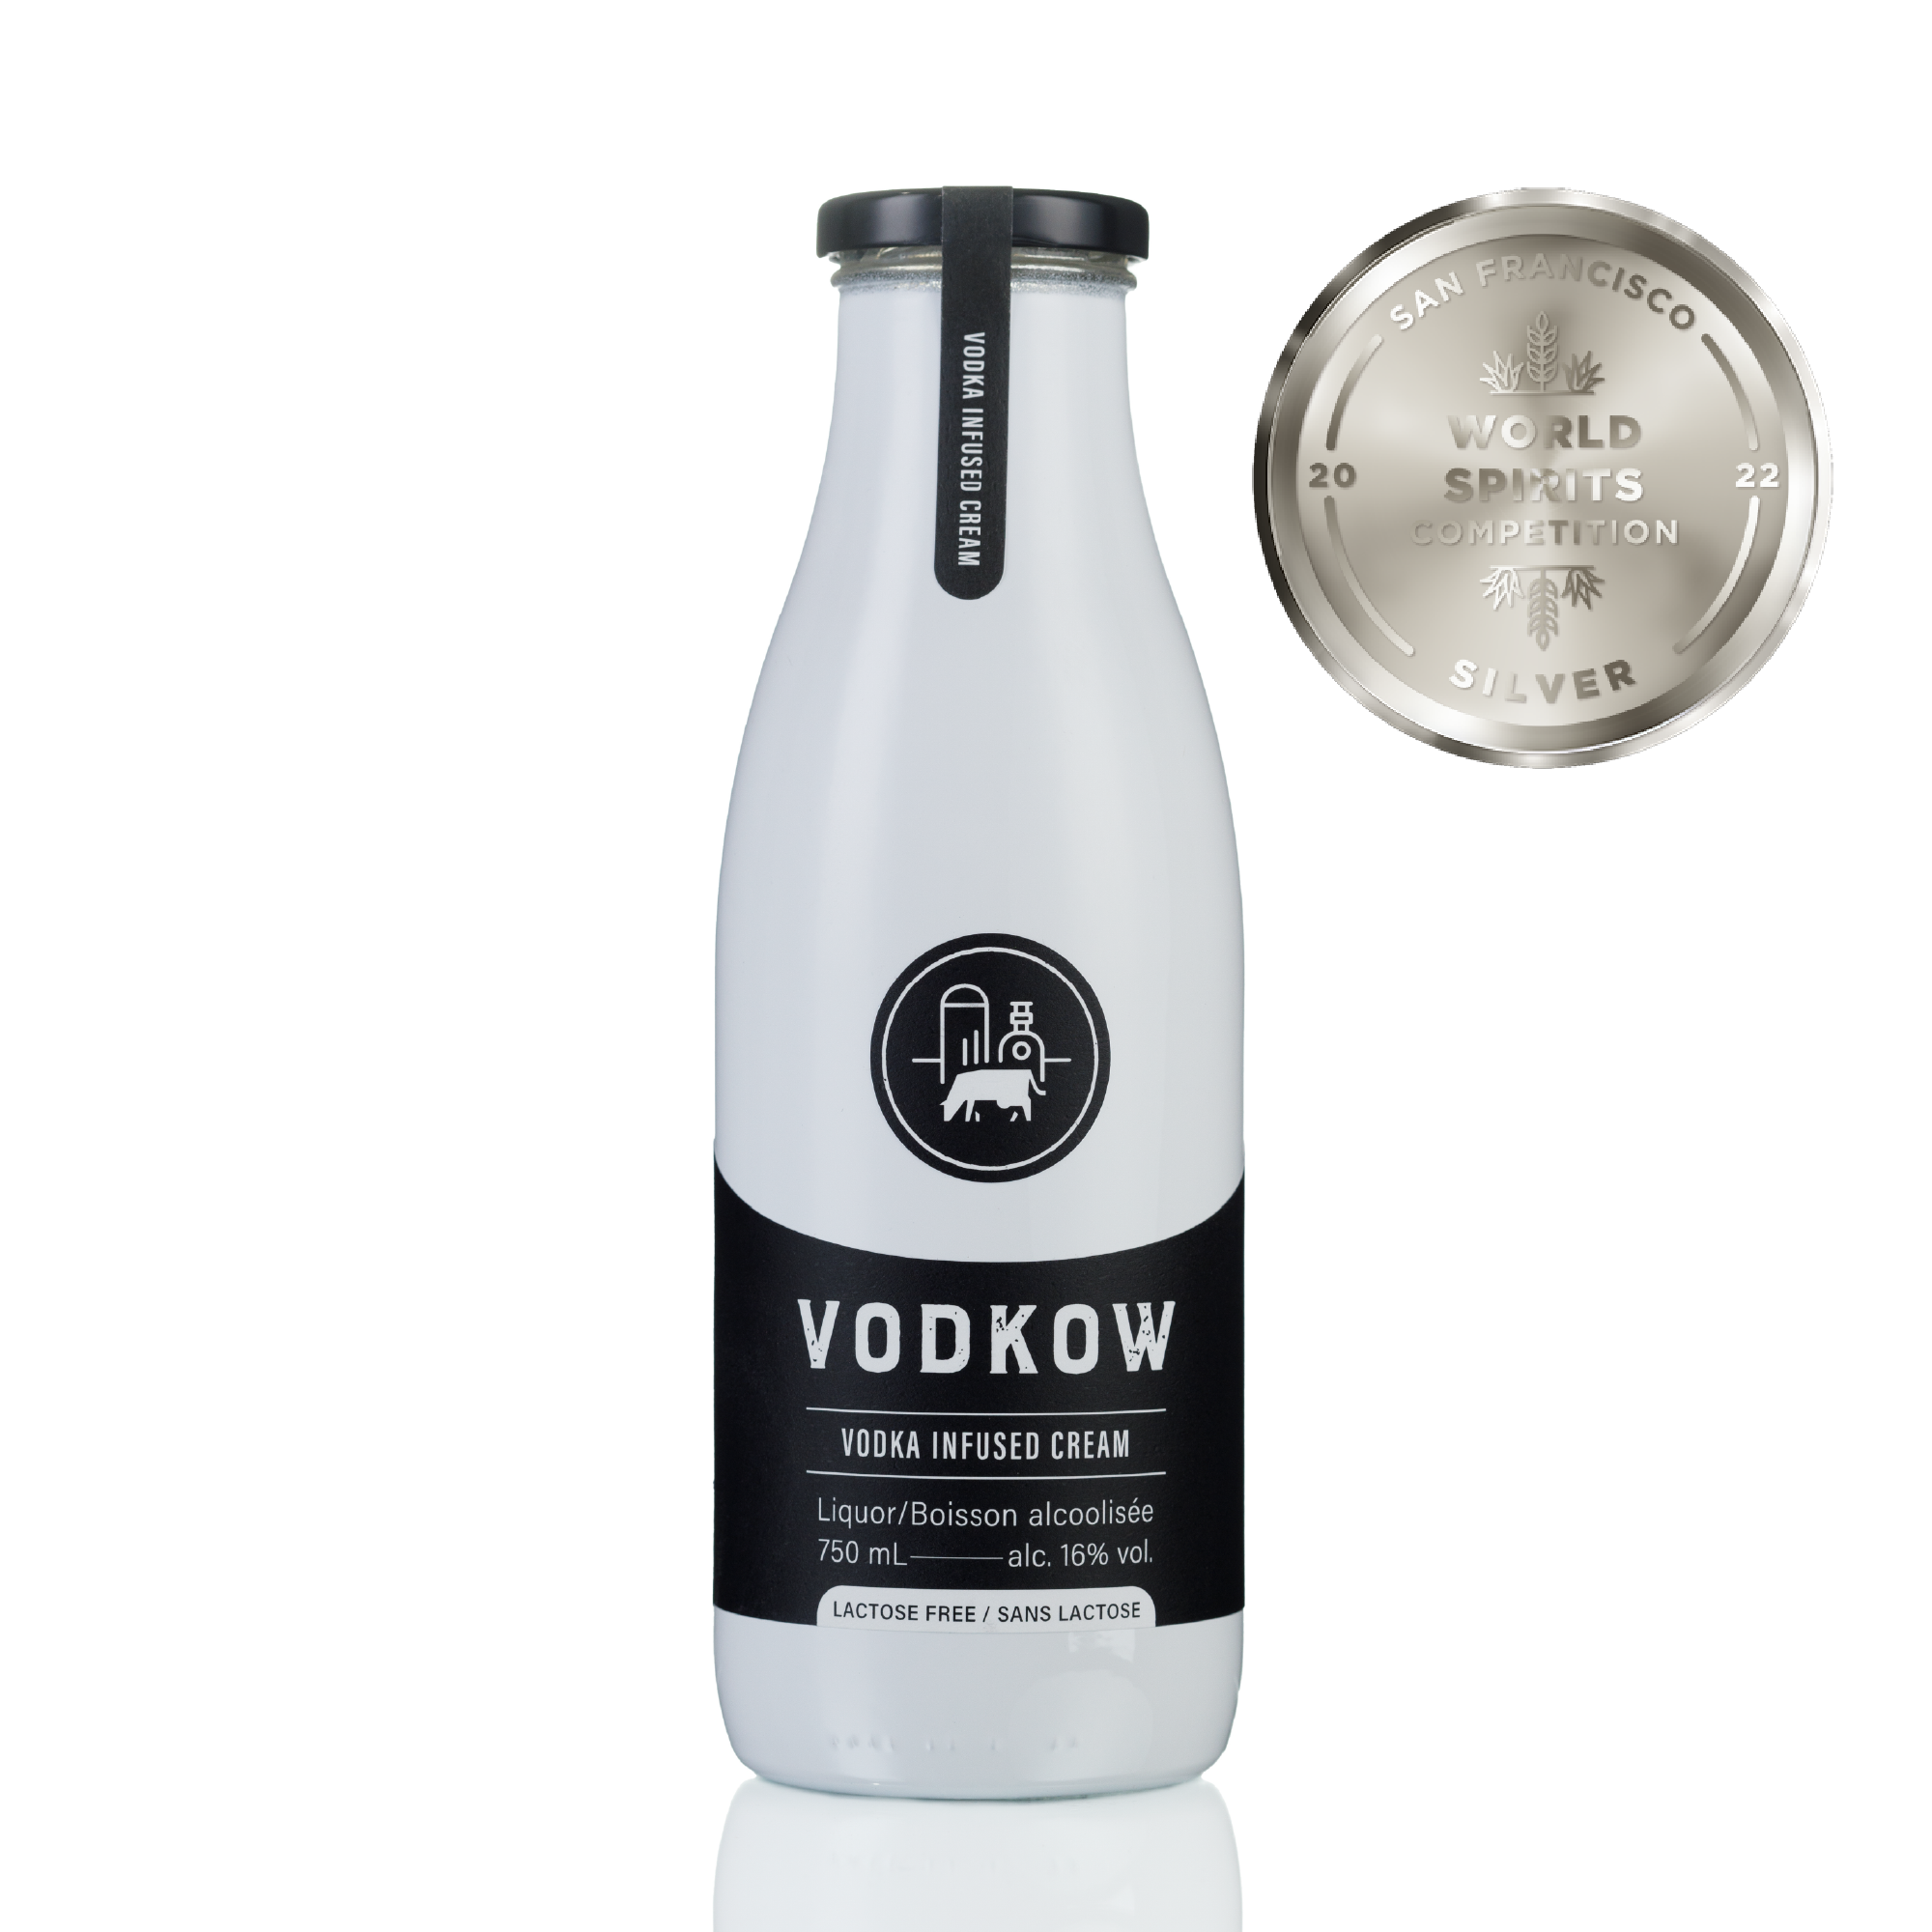 Spirits – VODKOW - The Future of Cream Liquor